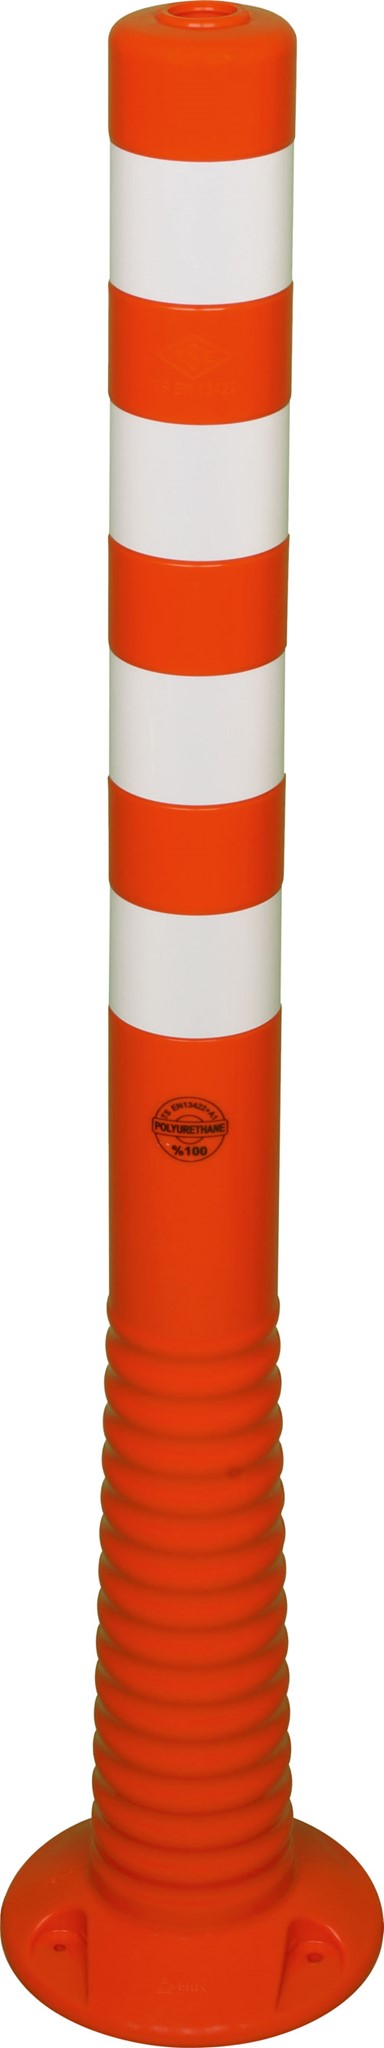 Picture of Flexipfosten 1000mm, Ø 80mm, orange